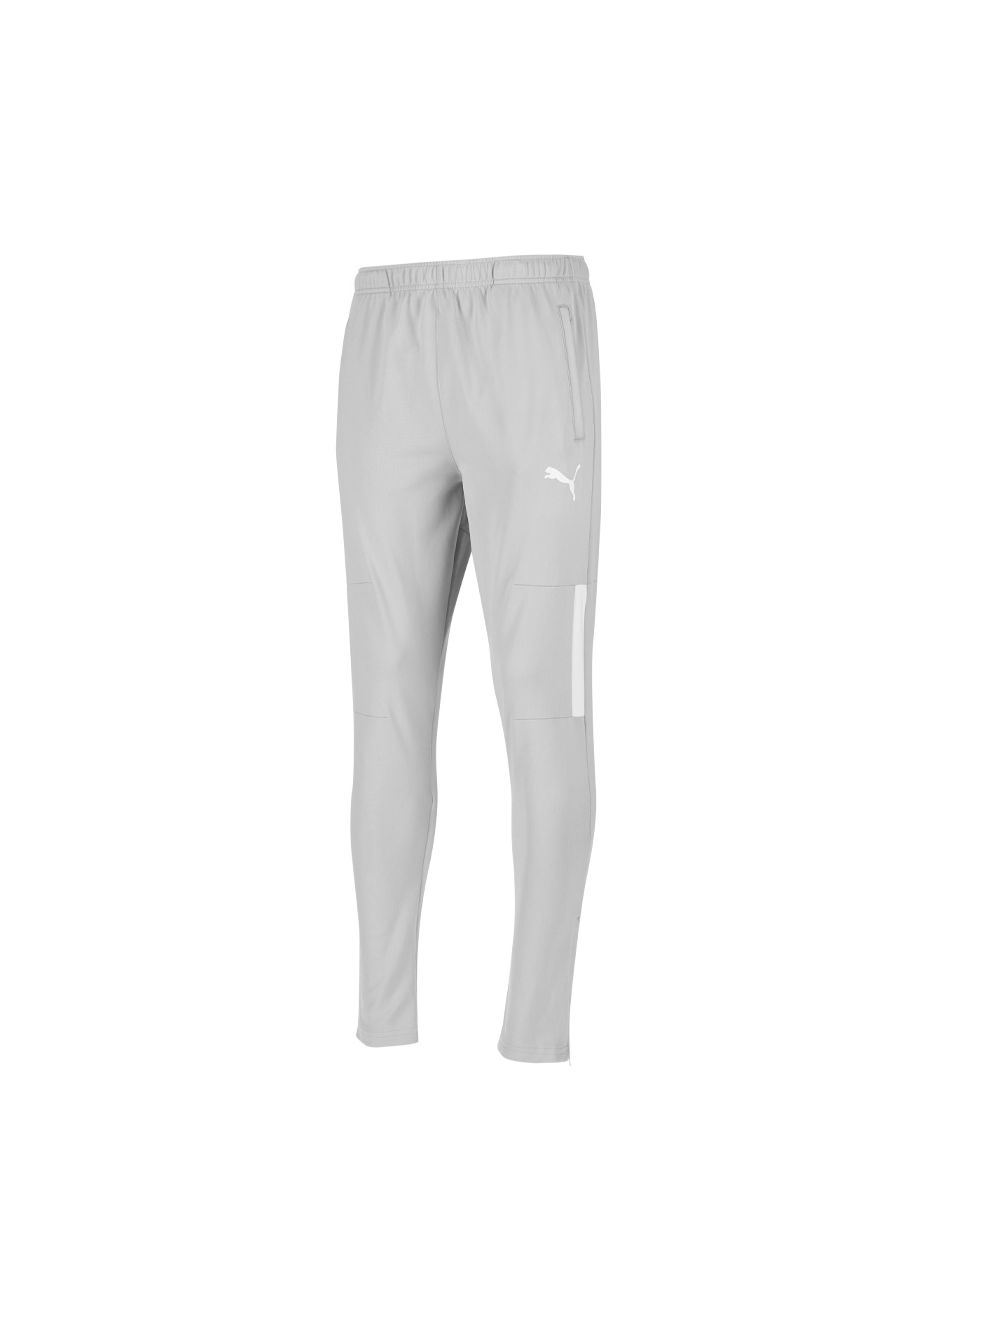 Shop Puma Warm Up Pants Mens Grey | Studio 88